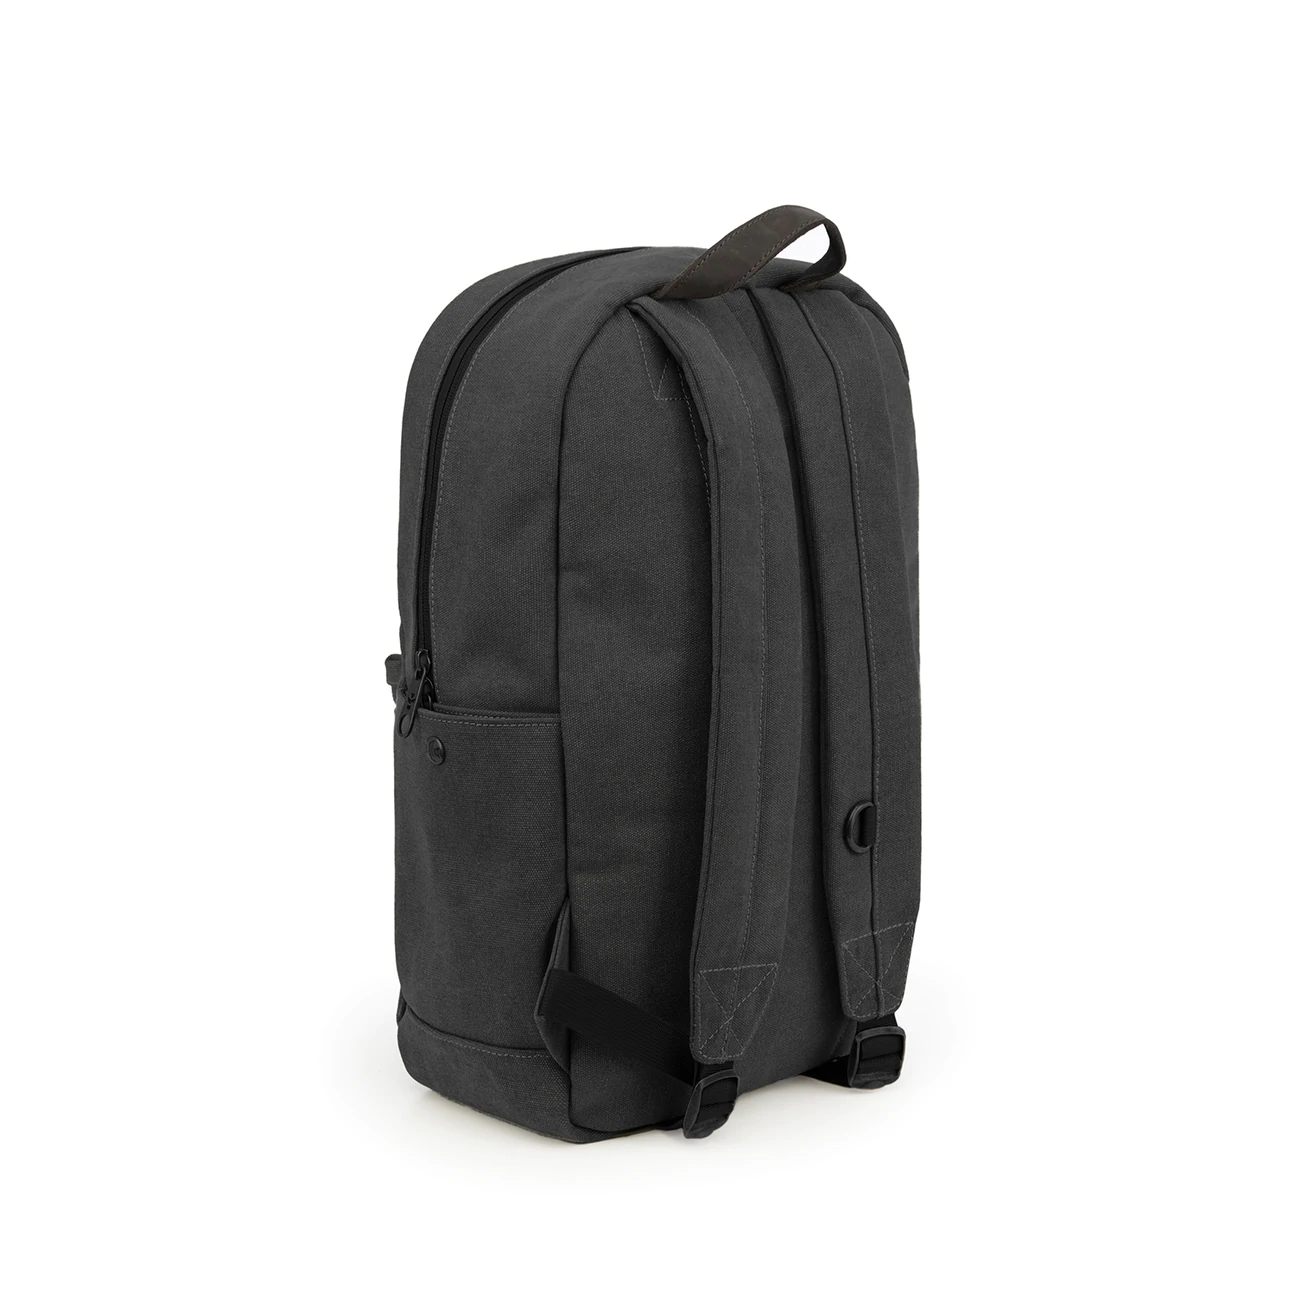 PUFF PUFF PASS - Revelry Escort Backpack - SMOKE – puffpuffpass.com